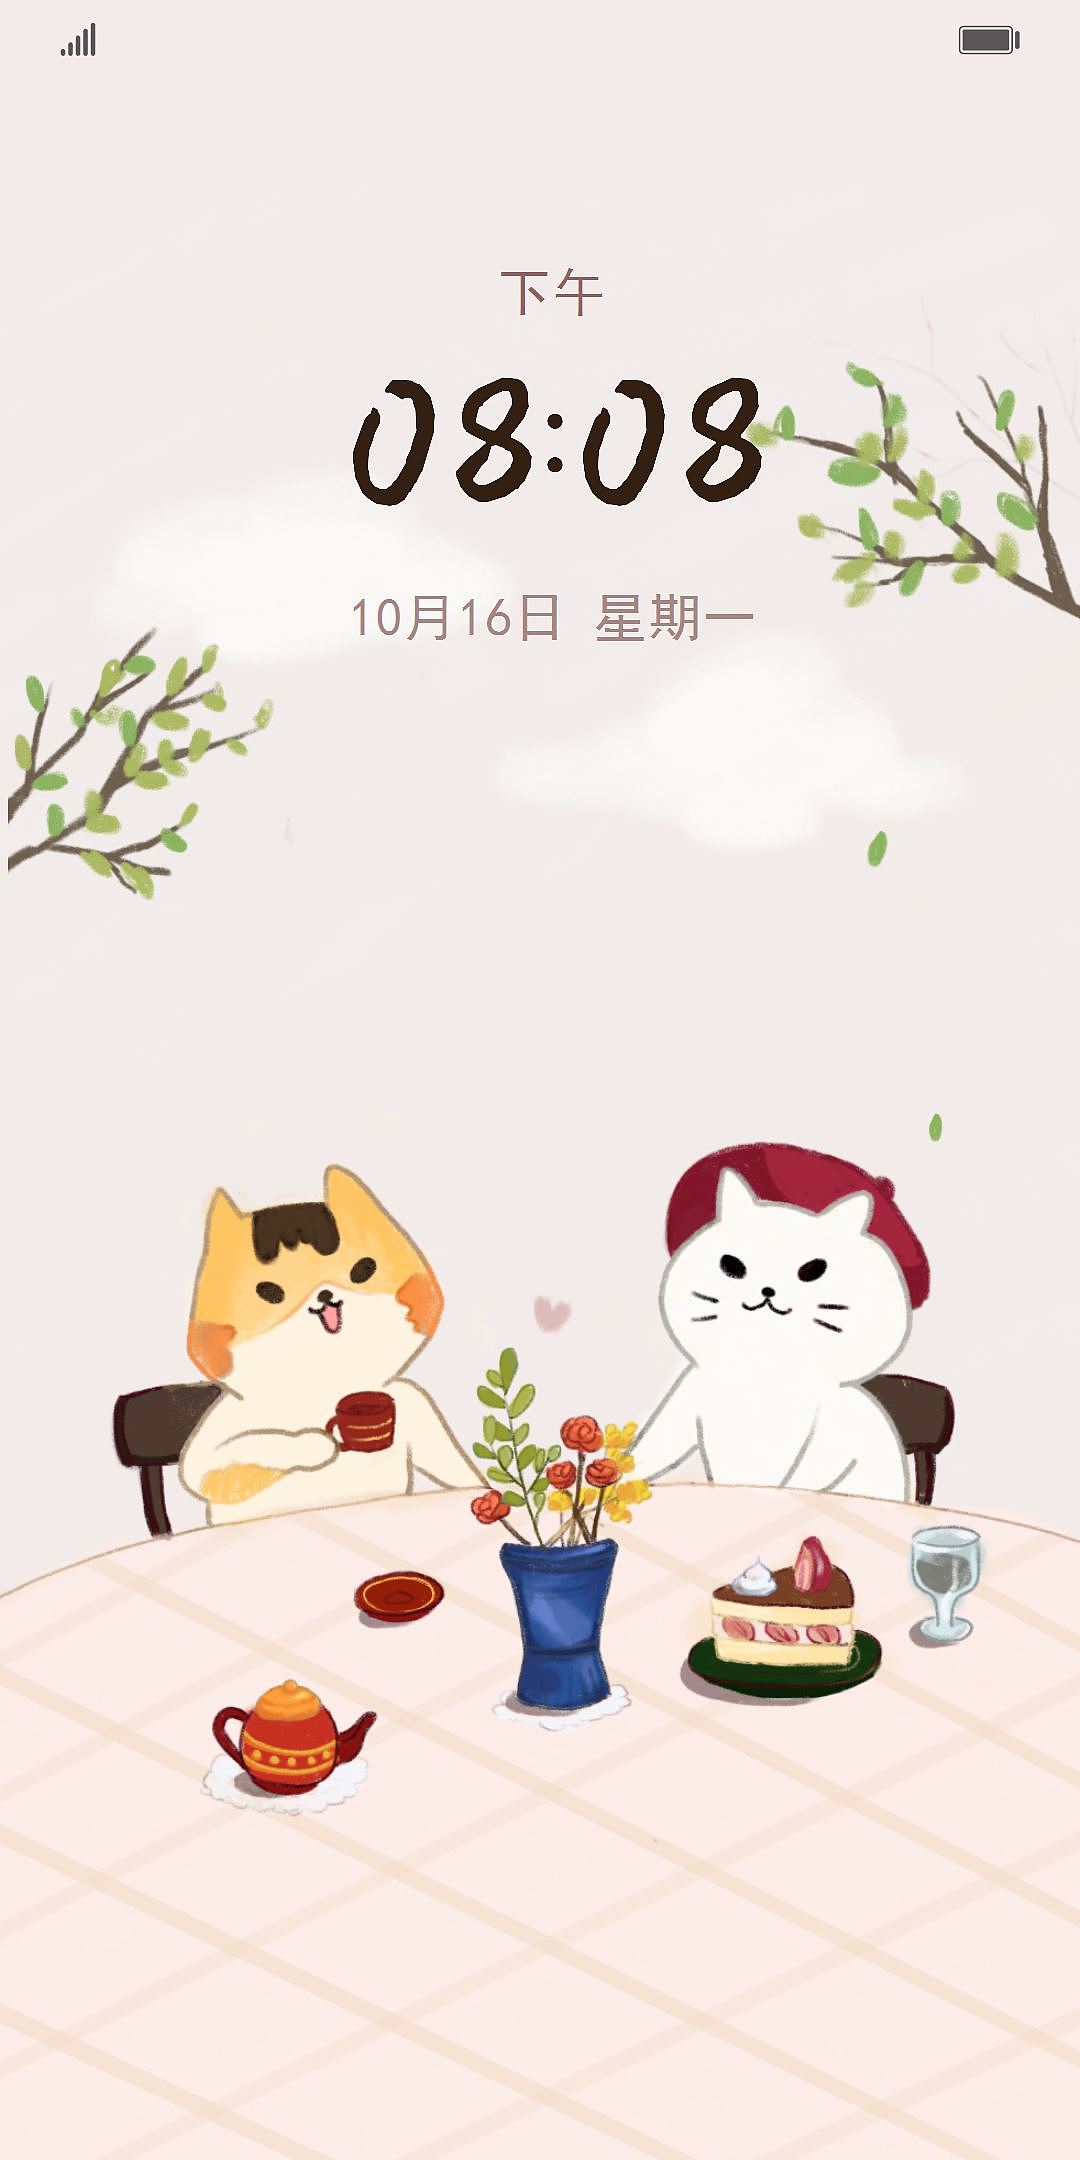 【华为主题设计】可爱猫咪餐厅 温暖动态壁纸